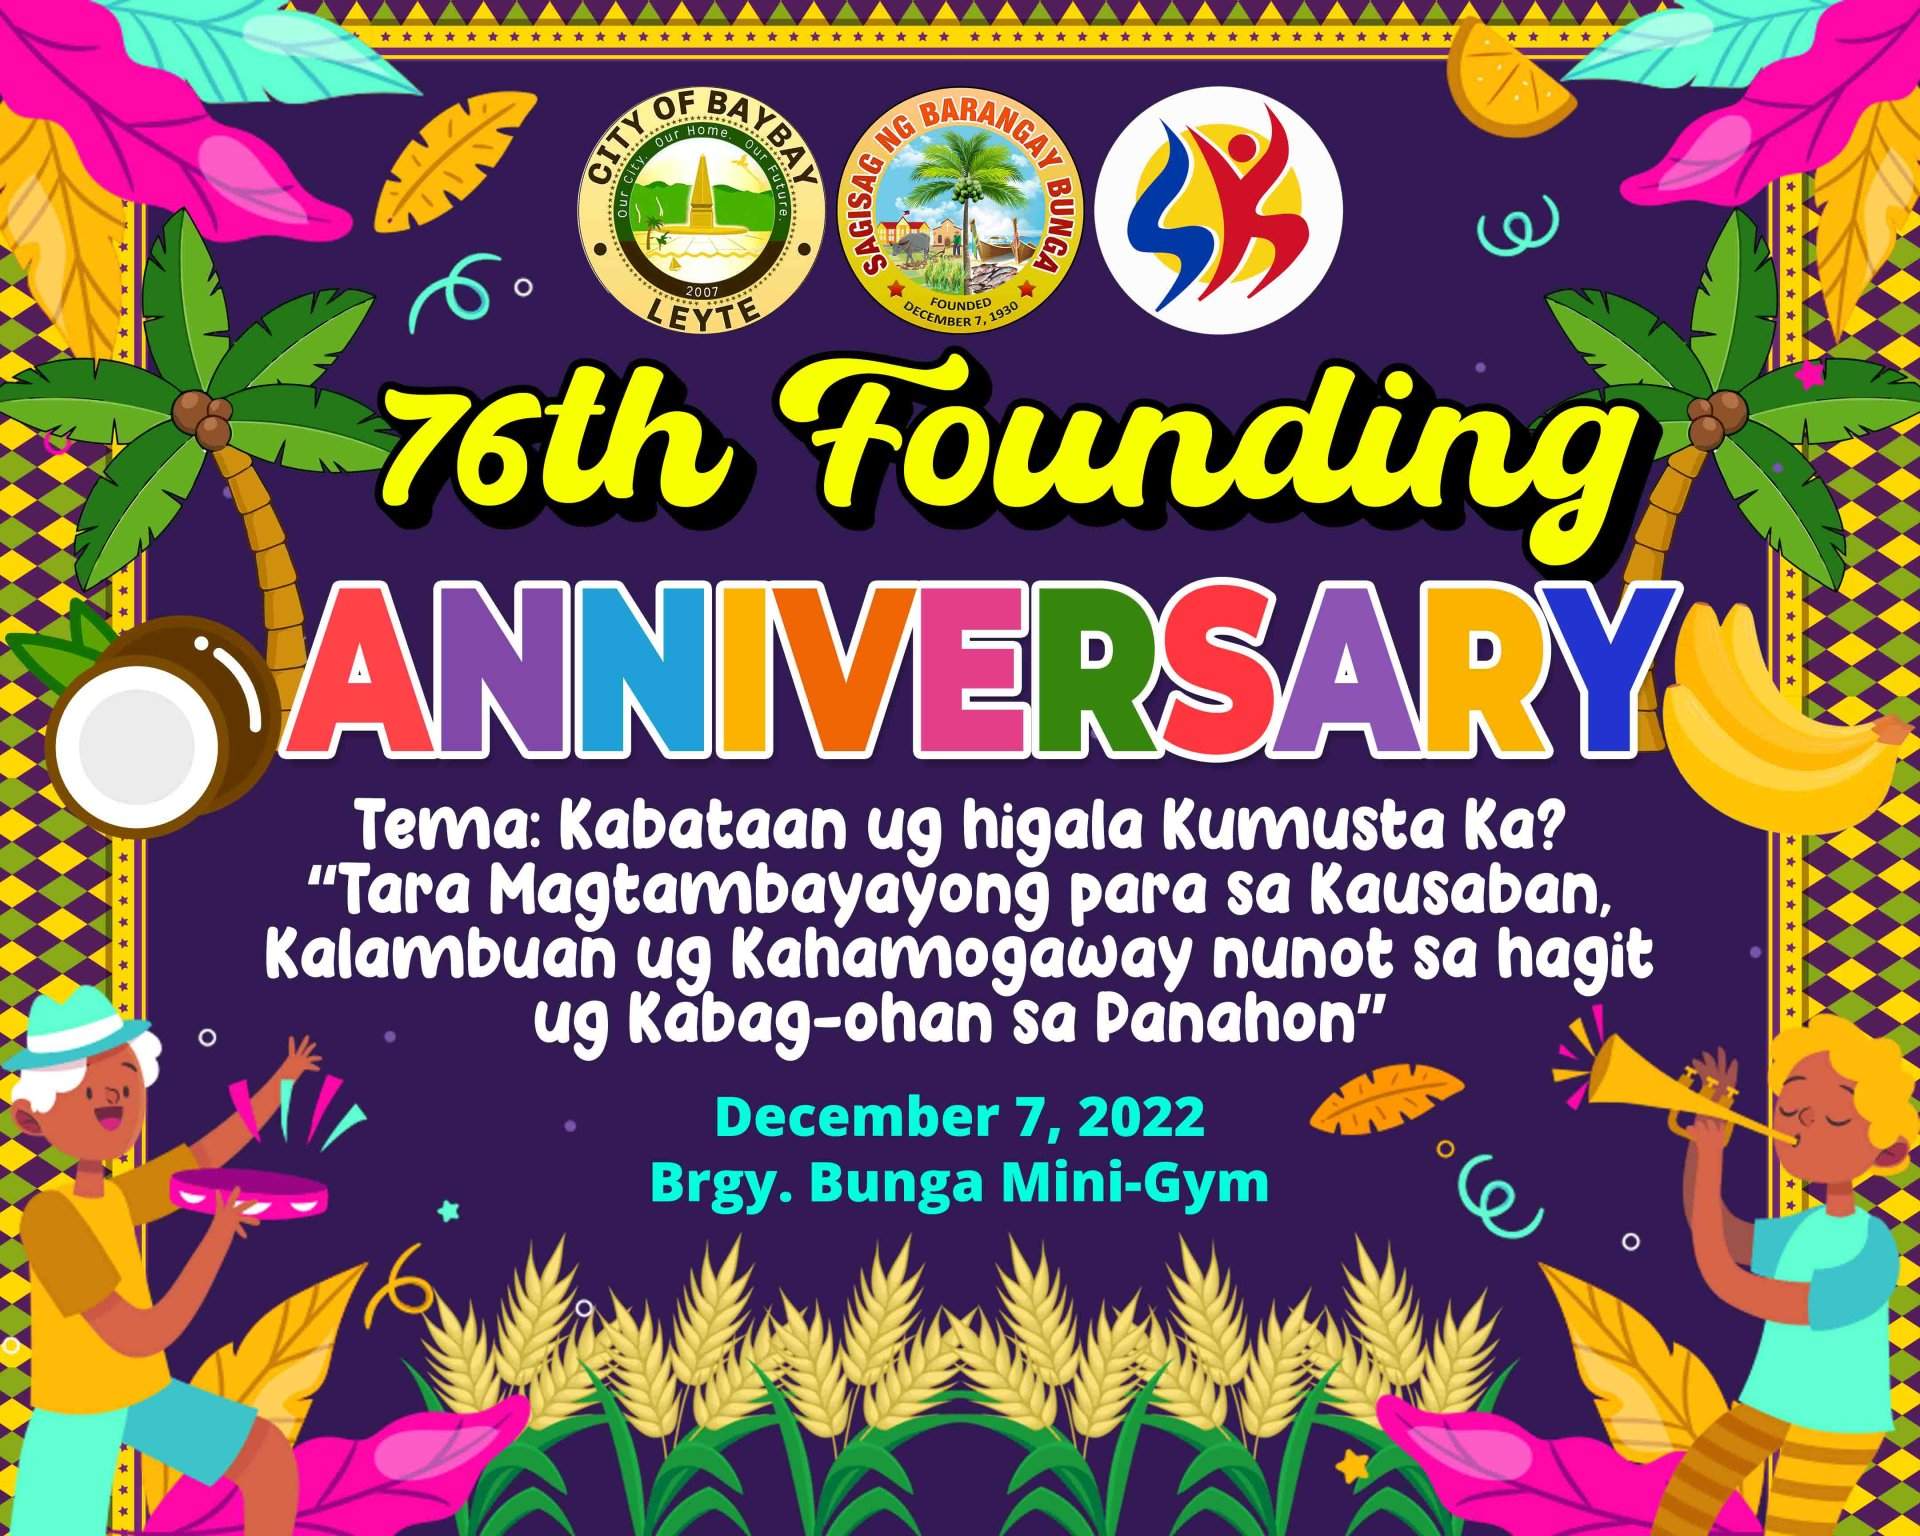 BUNGA founding anniversary.jpg